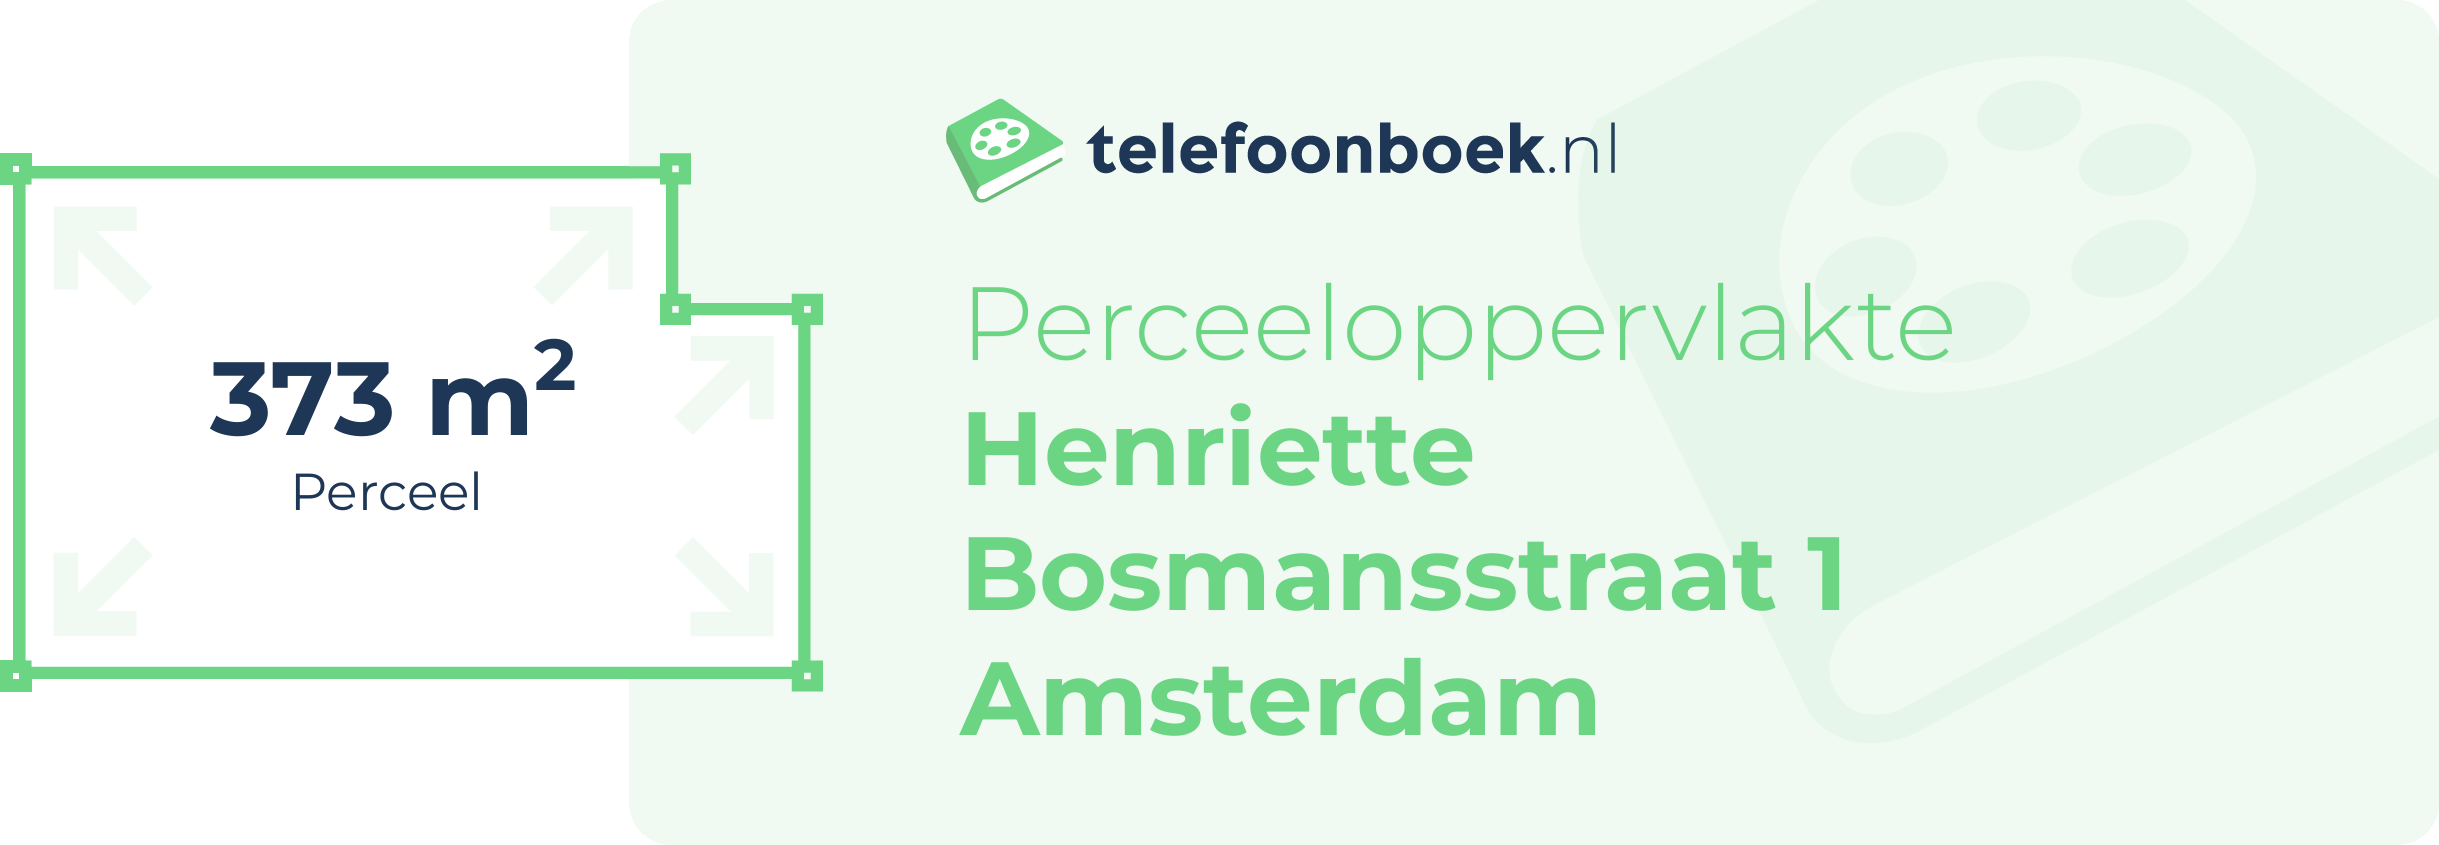 Perceeloppervlakte Henriette Bosmansstraat 1 Amsterdam